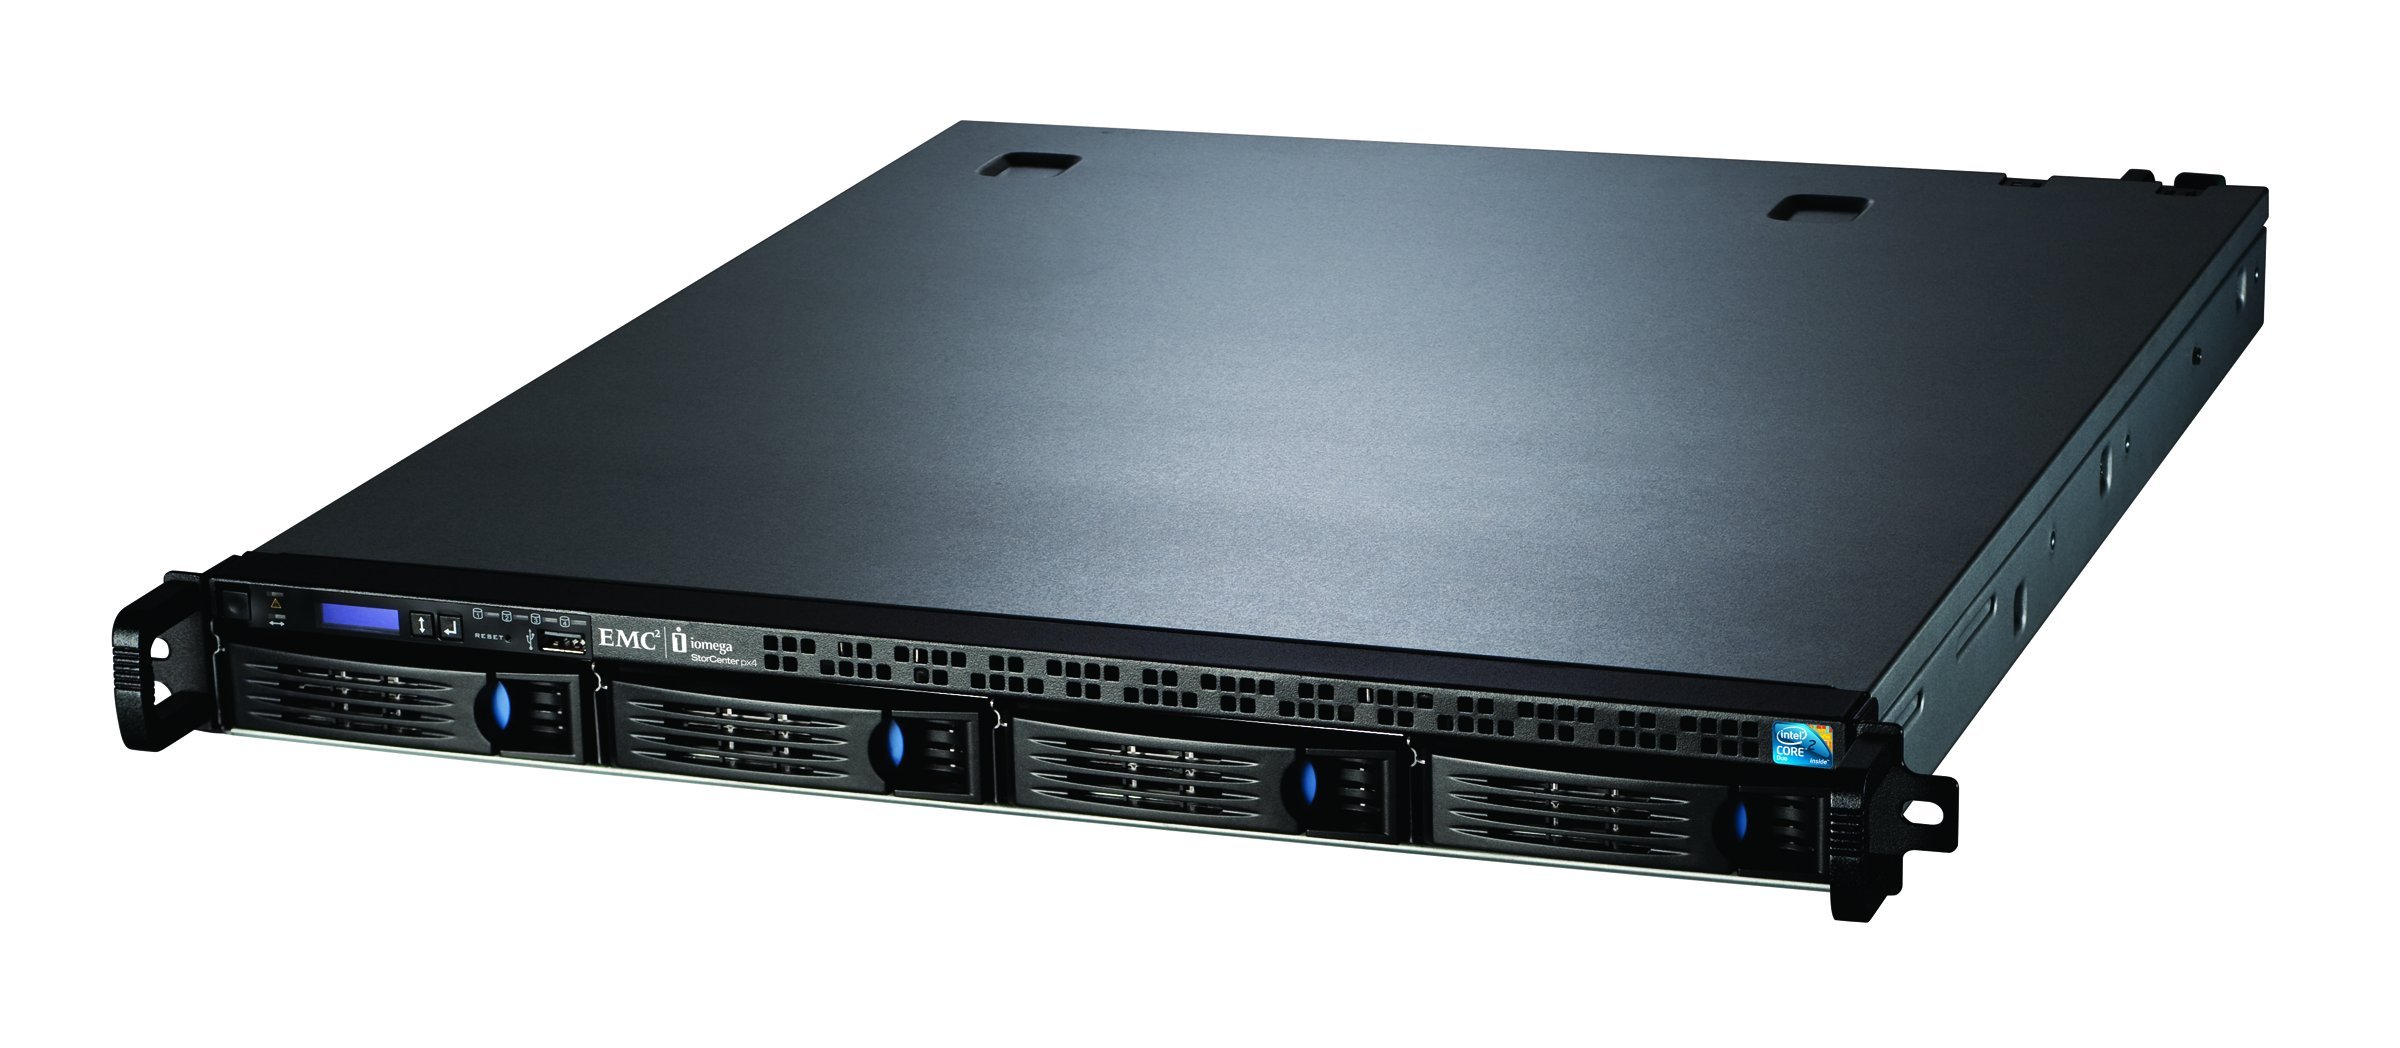 Iomega StorCenter px4-300r Rack (1 U) - Speicherserver (12 TB, ATA II Serie, 3000 GB, 3,5 Zoll, 0, 1, 5, 5+1, 10, 7200 U/min)